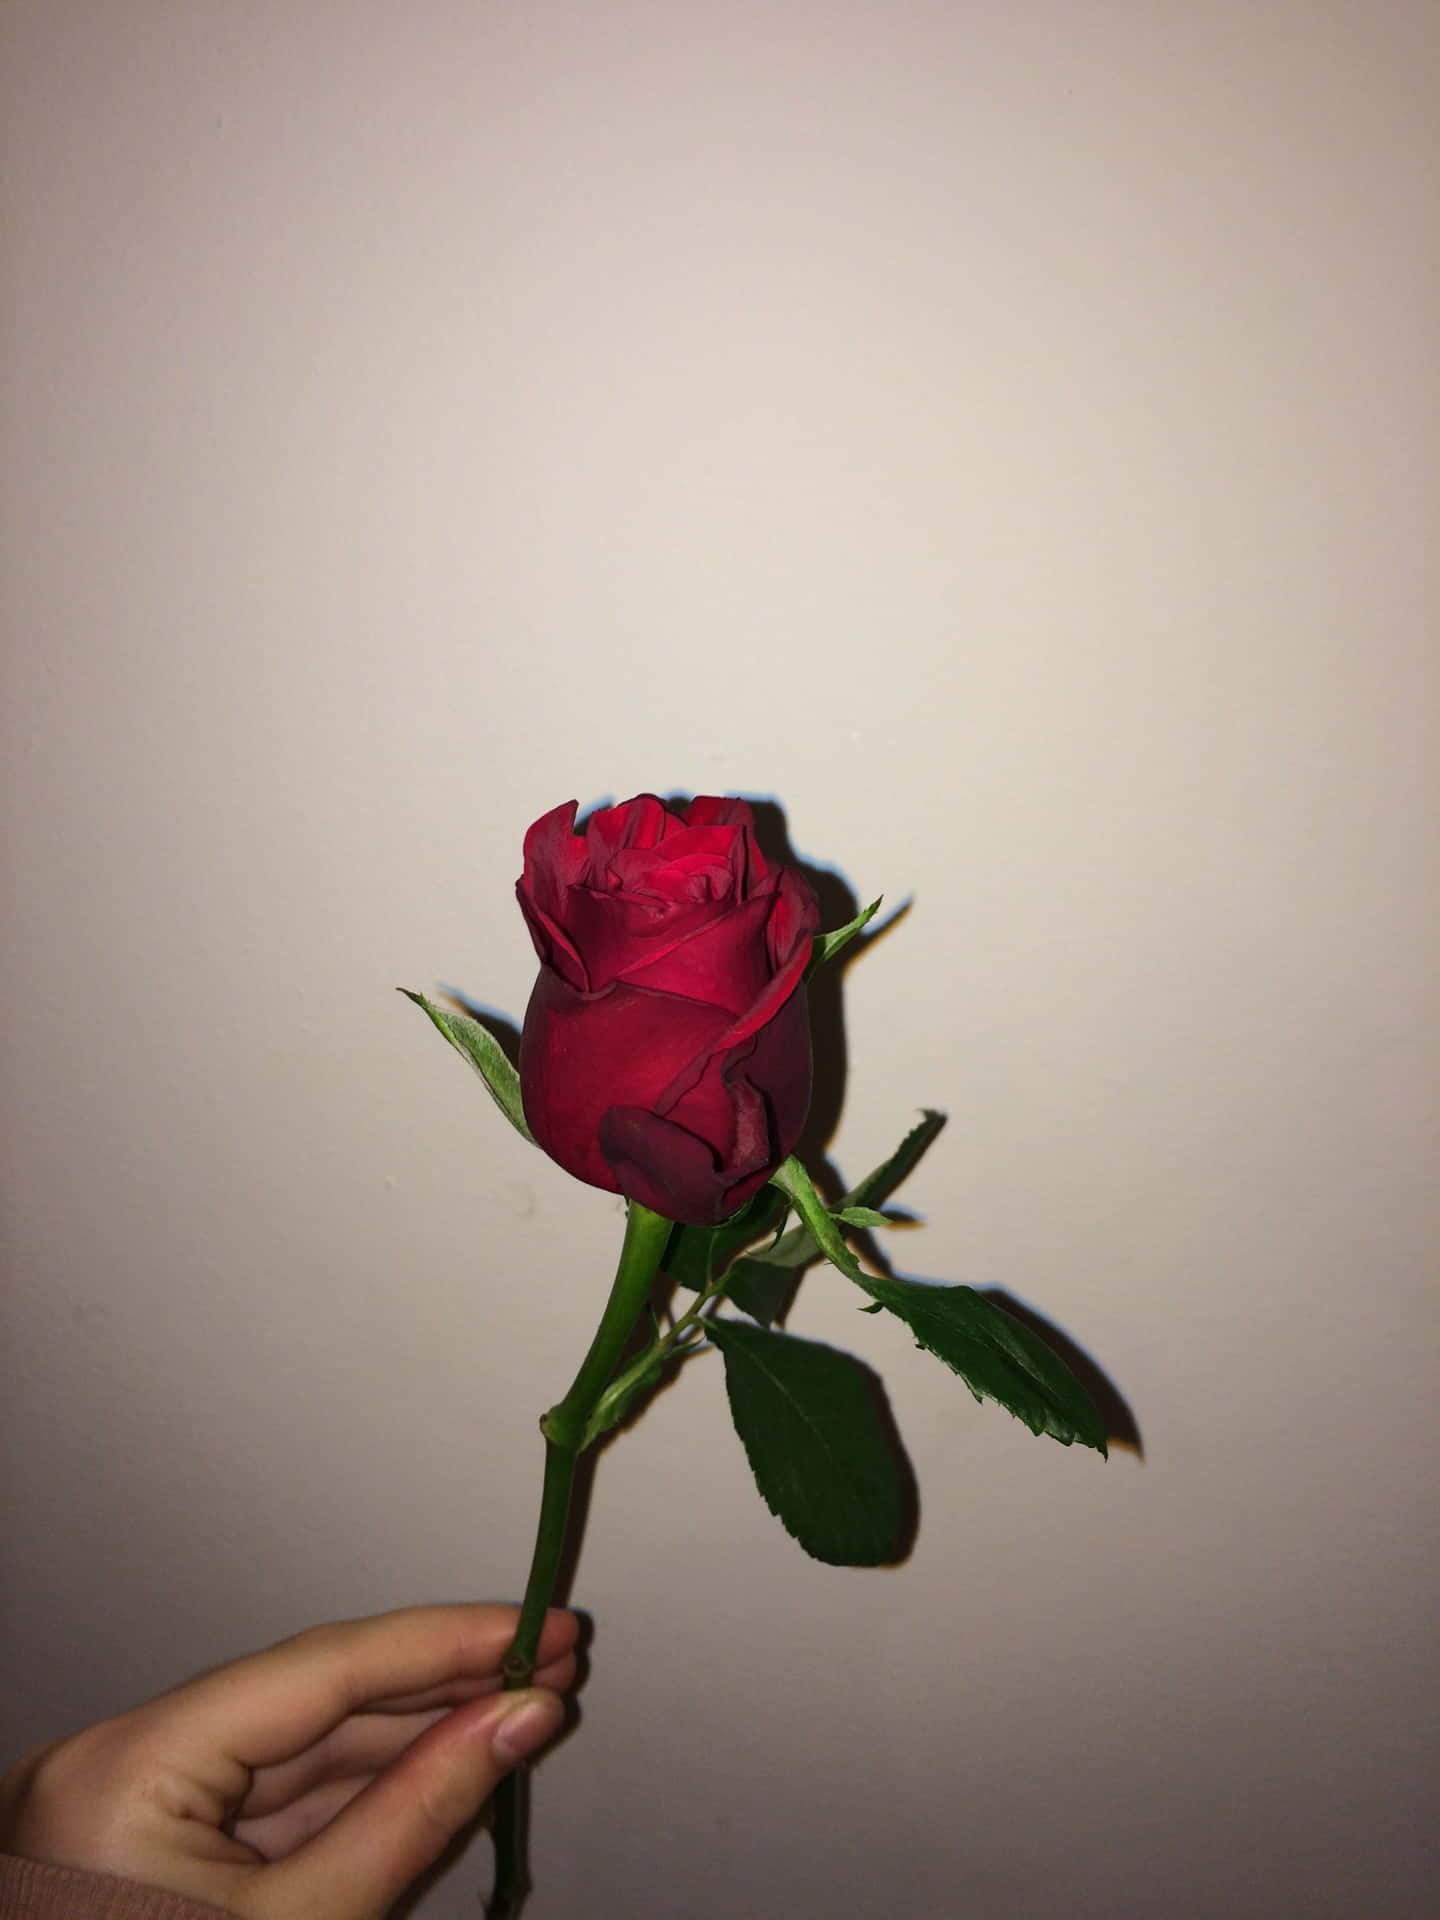 Amorecon Passione - Un'immagine Estetica Di Una Rosa Rossa. Sfondo